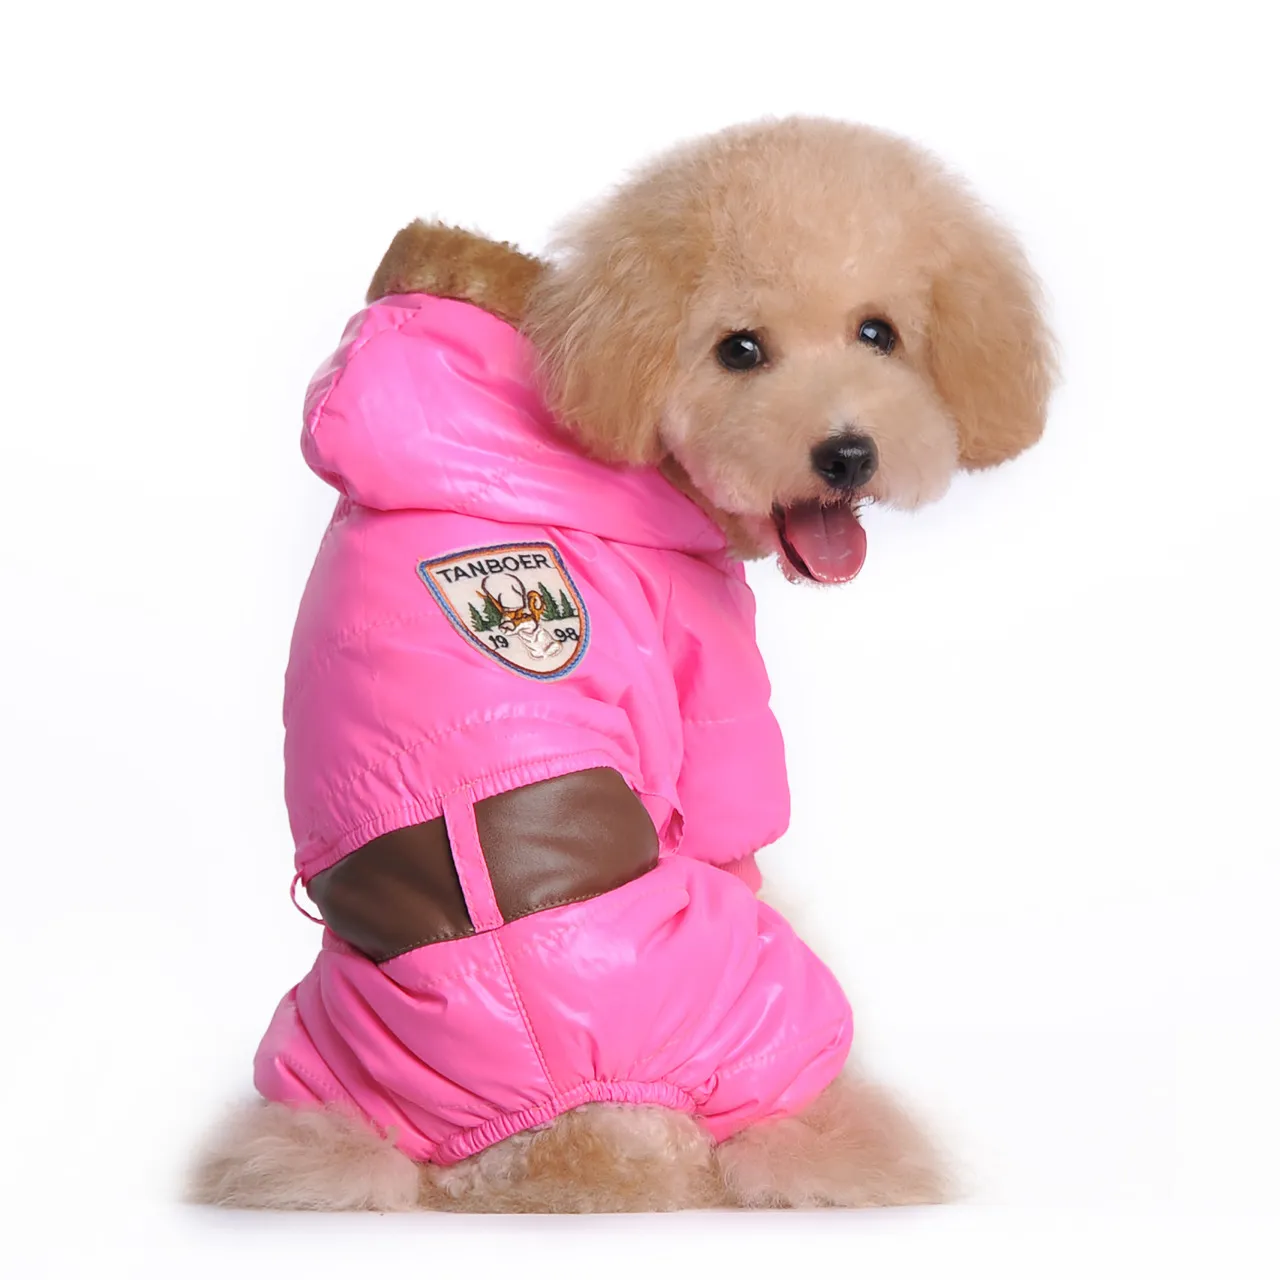 Mode nouveau chien vêtements sceau empreinte chien vêtements pet039s automne hiver veste manteau rose et bleu color5959307